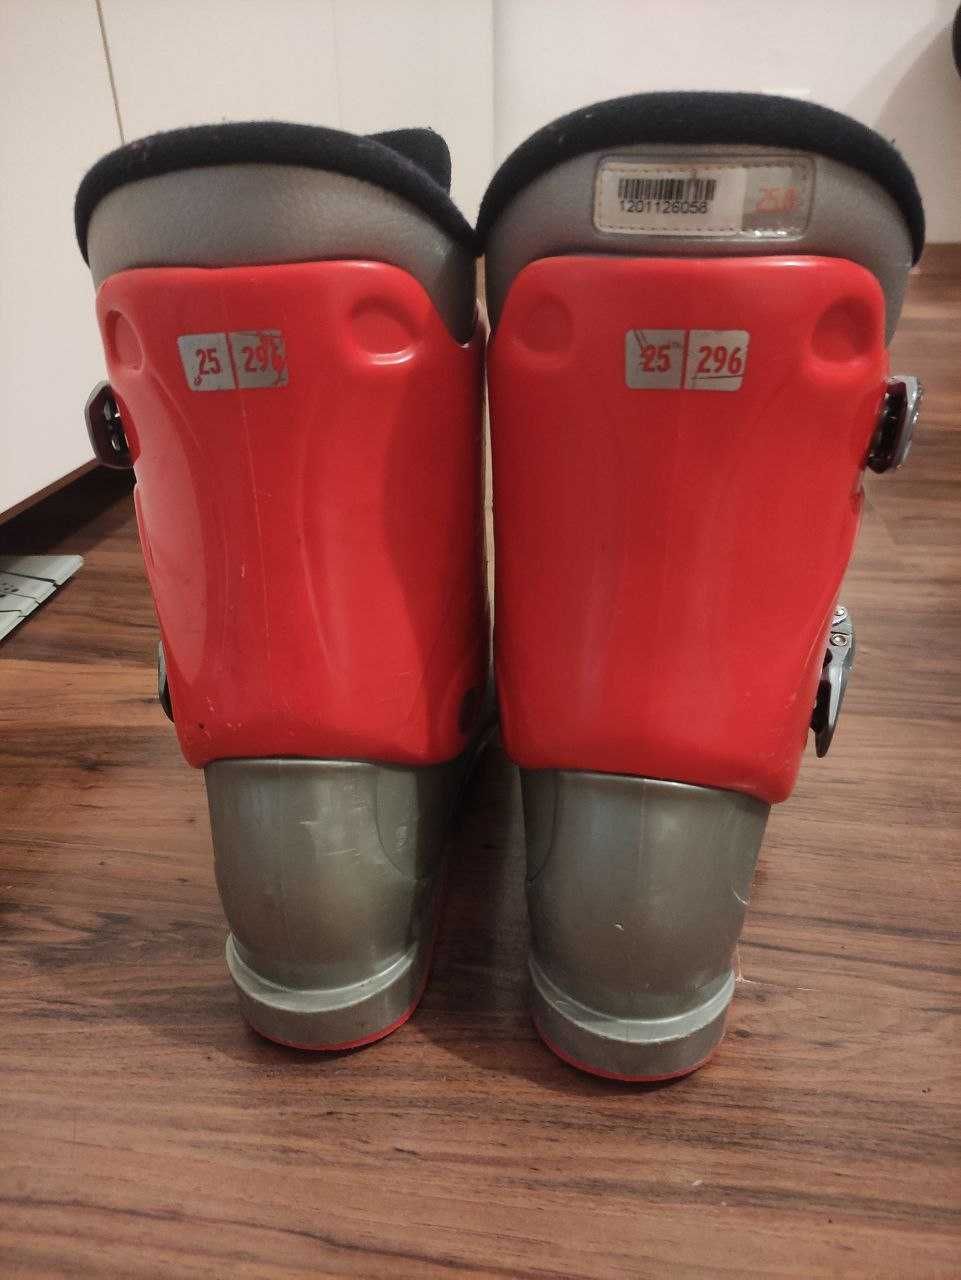 Buty narciarskie SALOMON T3 rozmiar 25-25,5 długość skorupy 296mm